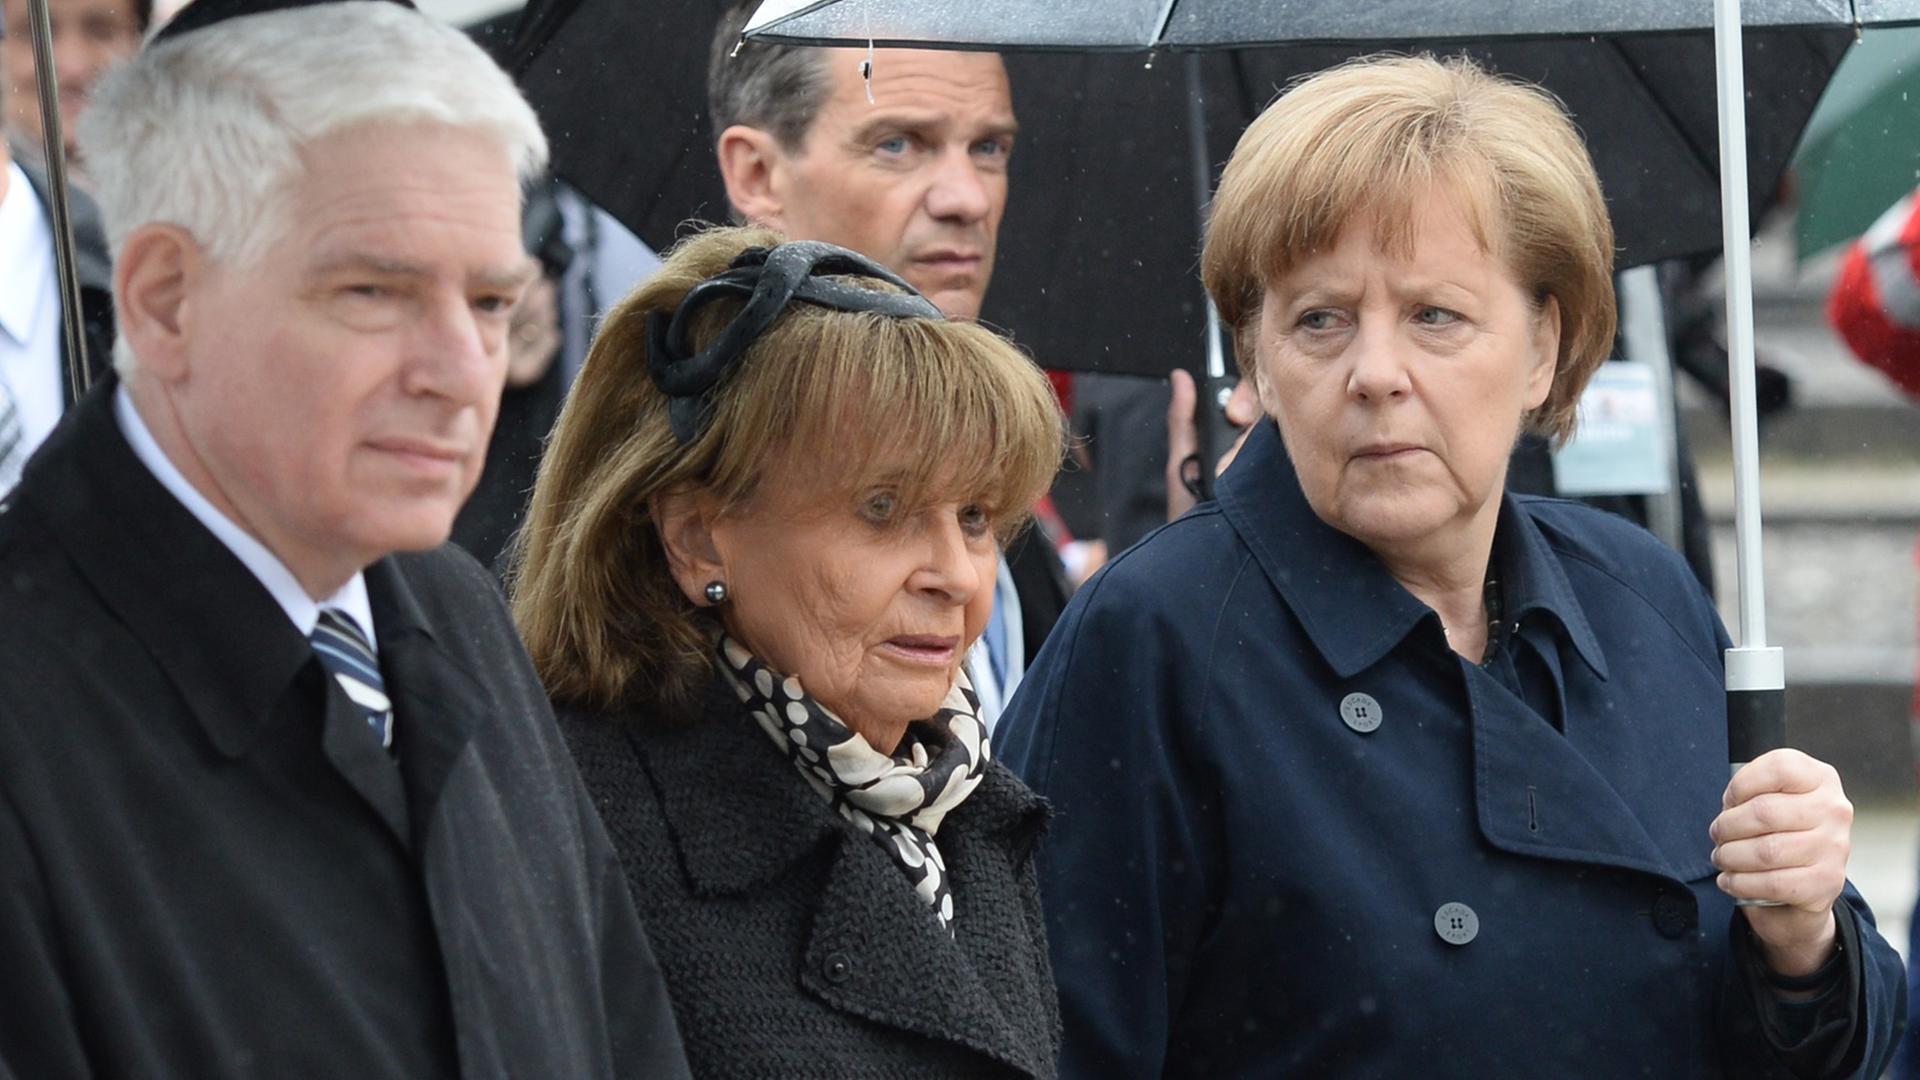 Bundeskanzlerin Angela Merkel (r, CDDU) geht am 03.05.2015 mit dem Präsidenten des Zentralrats der Juden, Josef Schuster (l), und der Präsidentin der Israelitischen Kultusgemeinde München und Oberbayern, Charlotte Knobloch, zur Zentralen Gedenkfeier anlässlich des 70. Jahrestags der Befreiung des Konzentrationslagers Dachau auf dem ehemaligen KZ-Gelände in Dachau (Bayern).